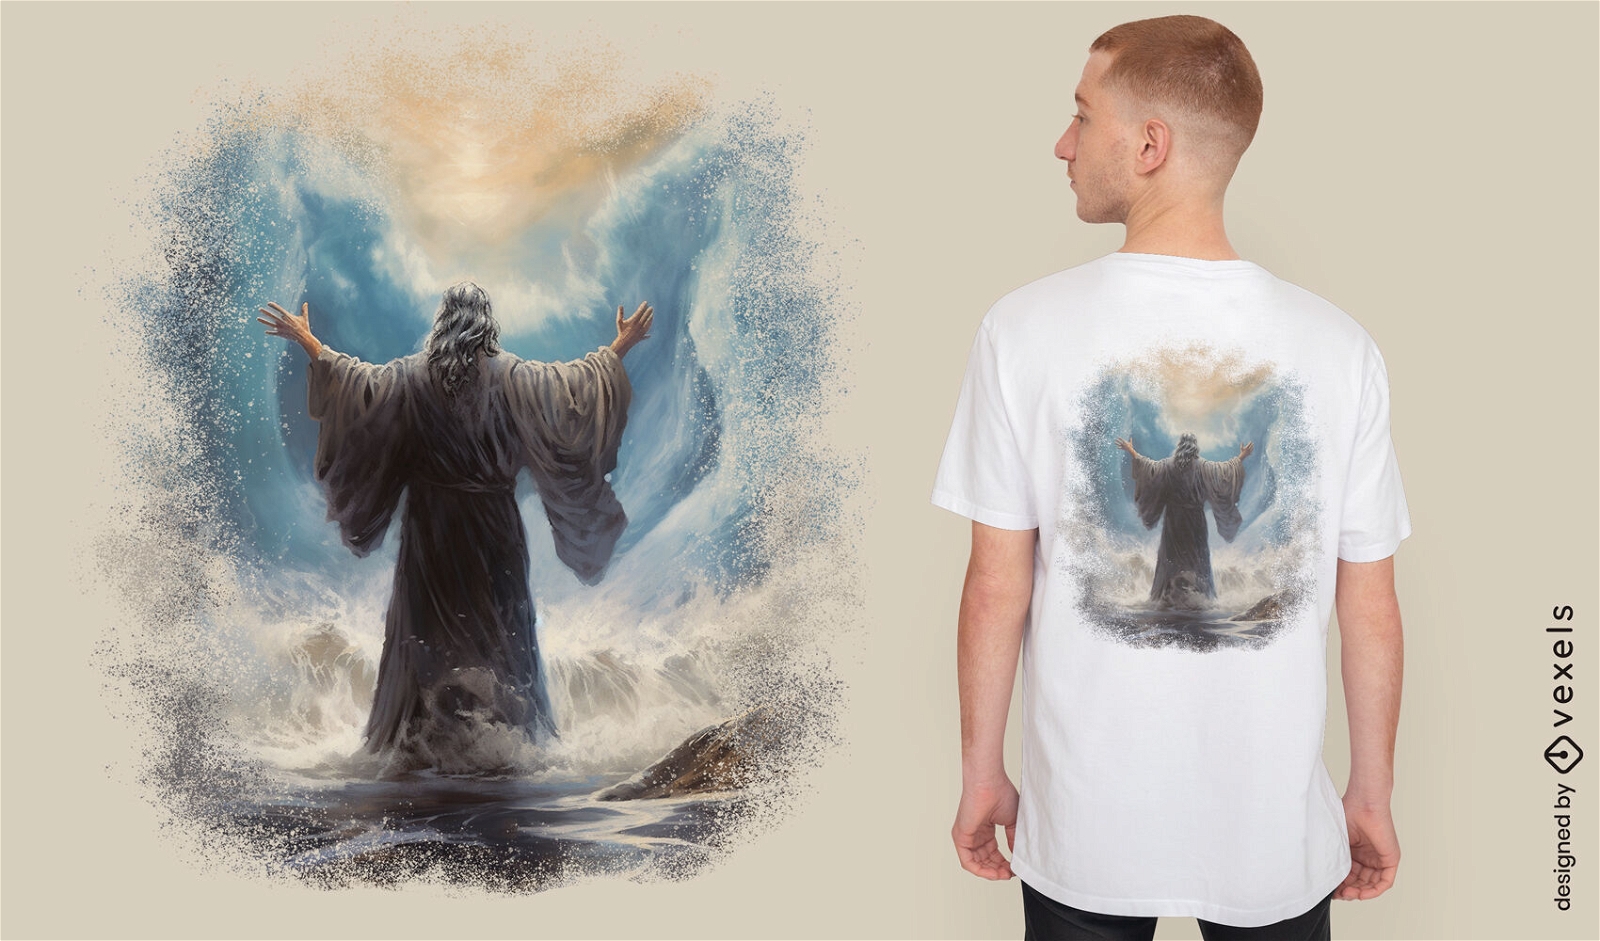 Diseño de camiseta de figura mística.